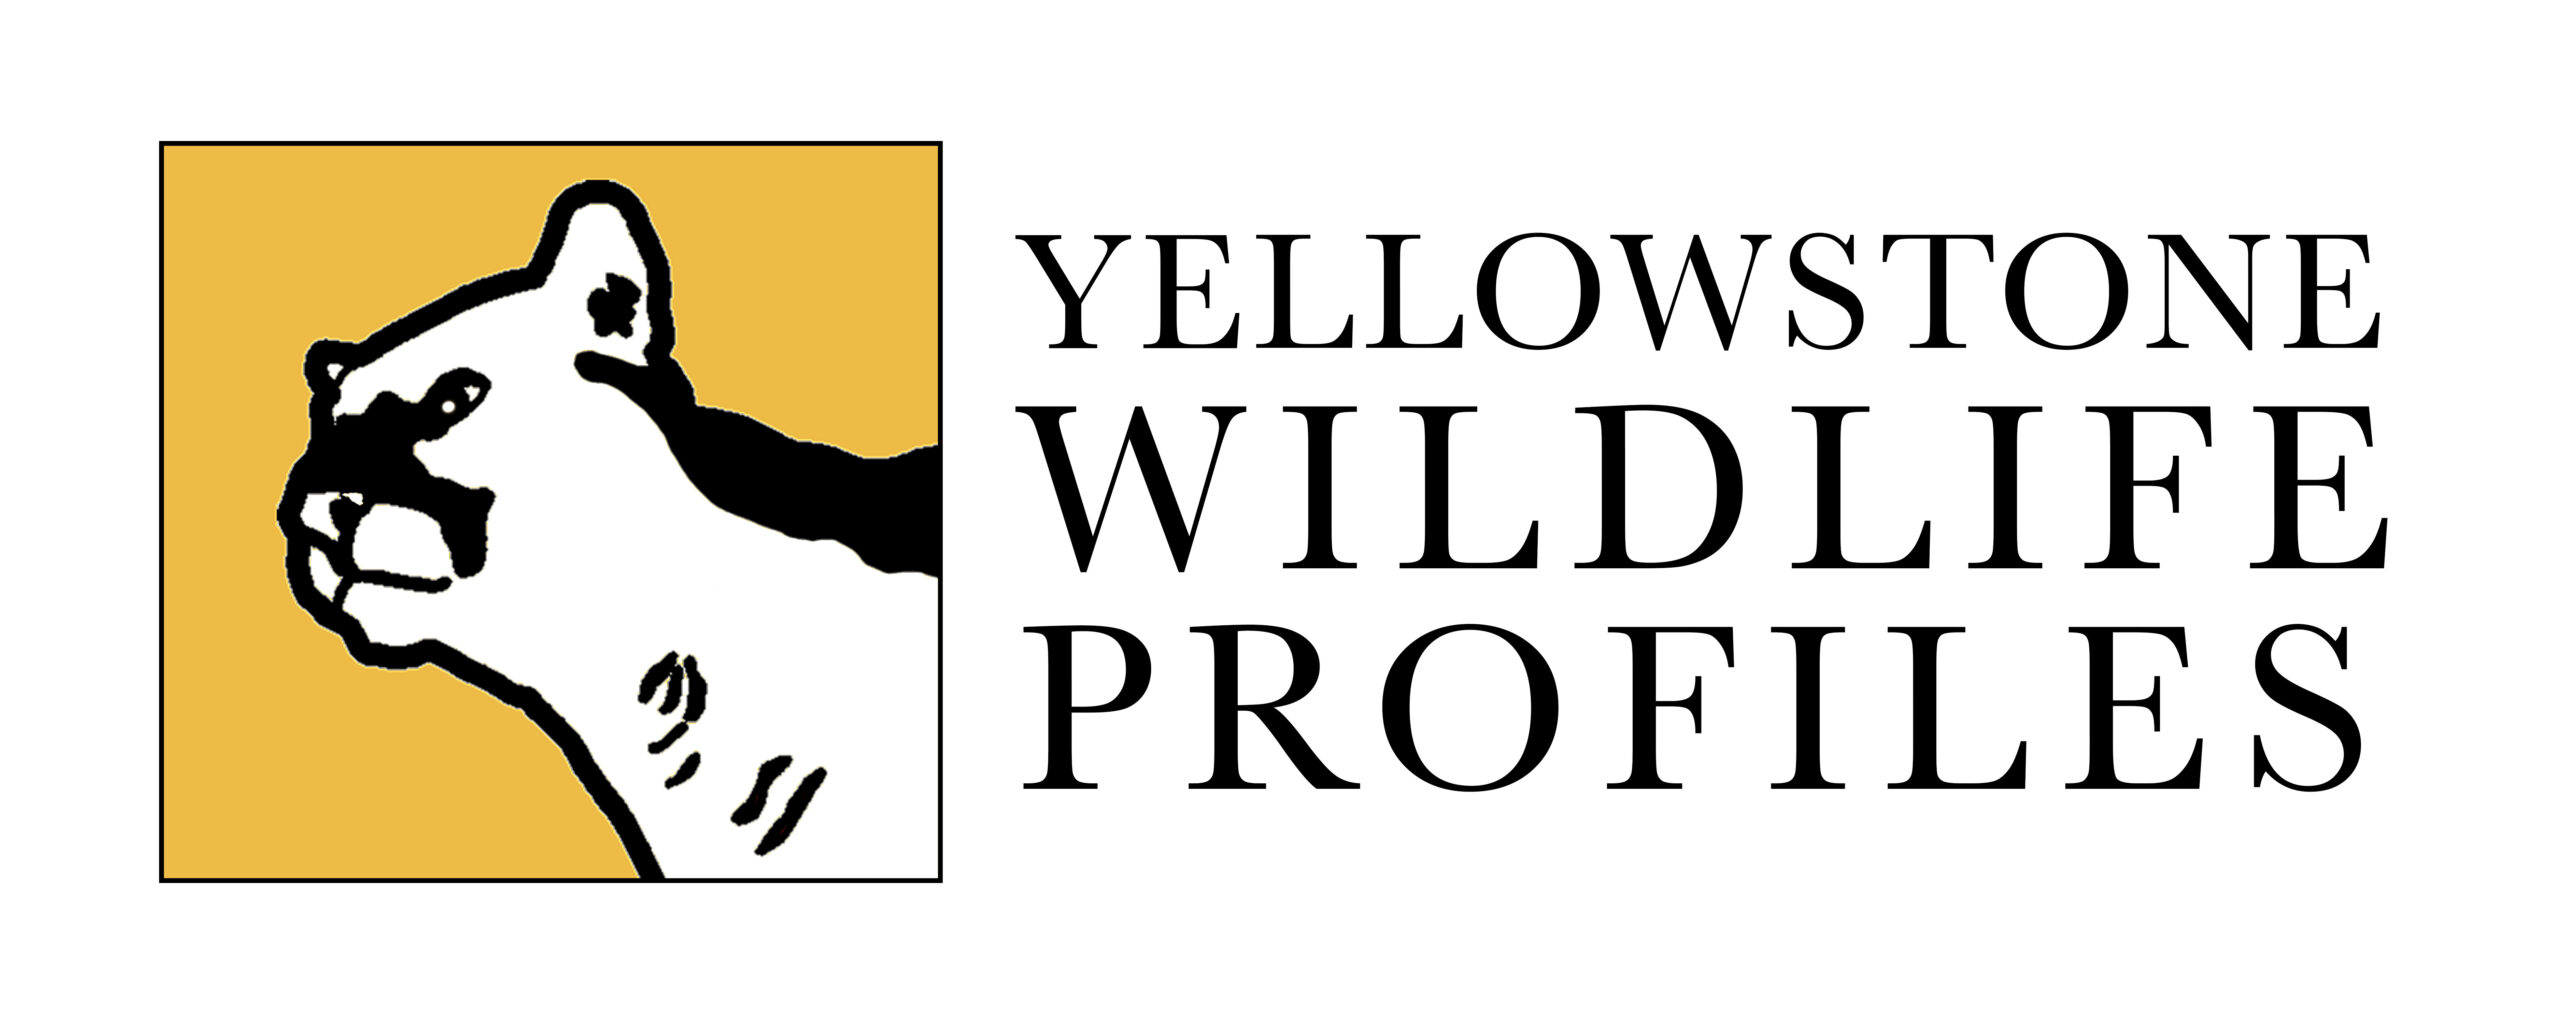 Yellowstone Wildlife Profiles logo